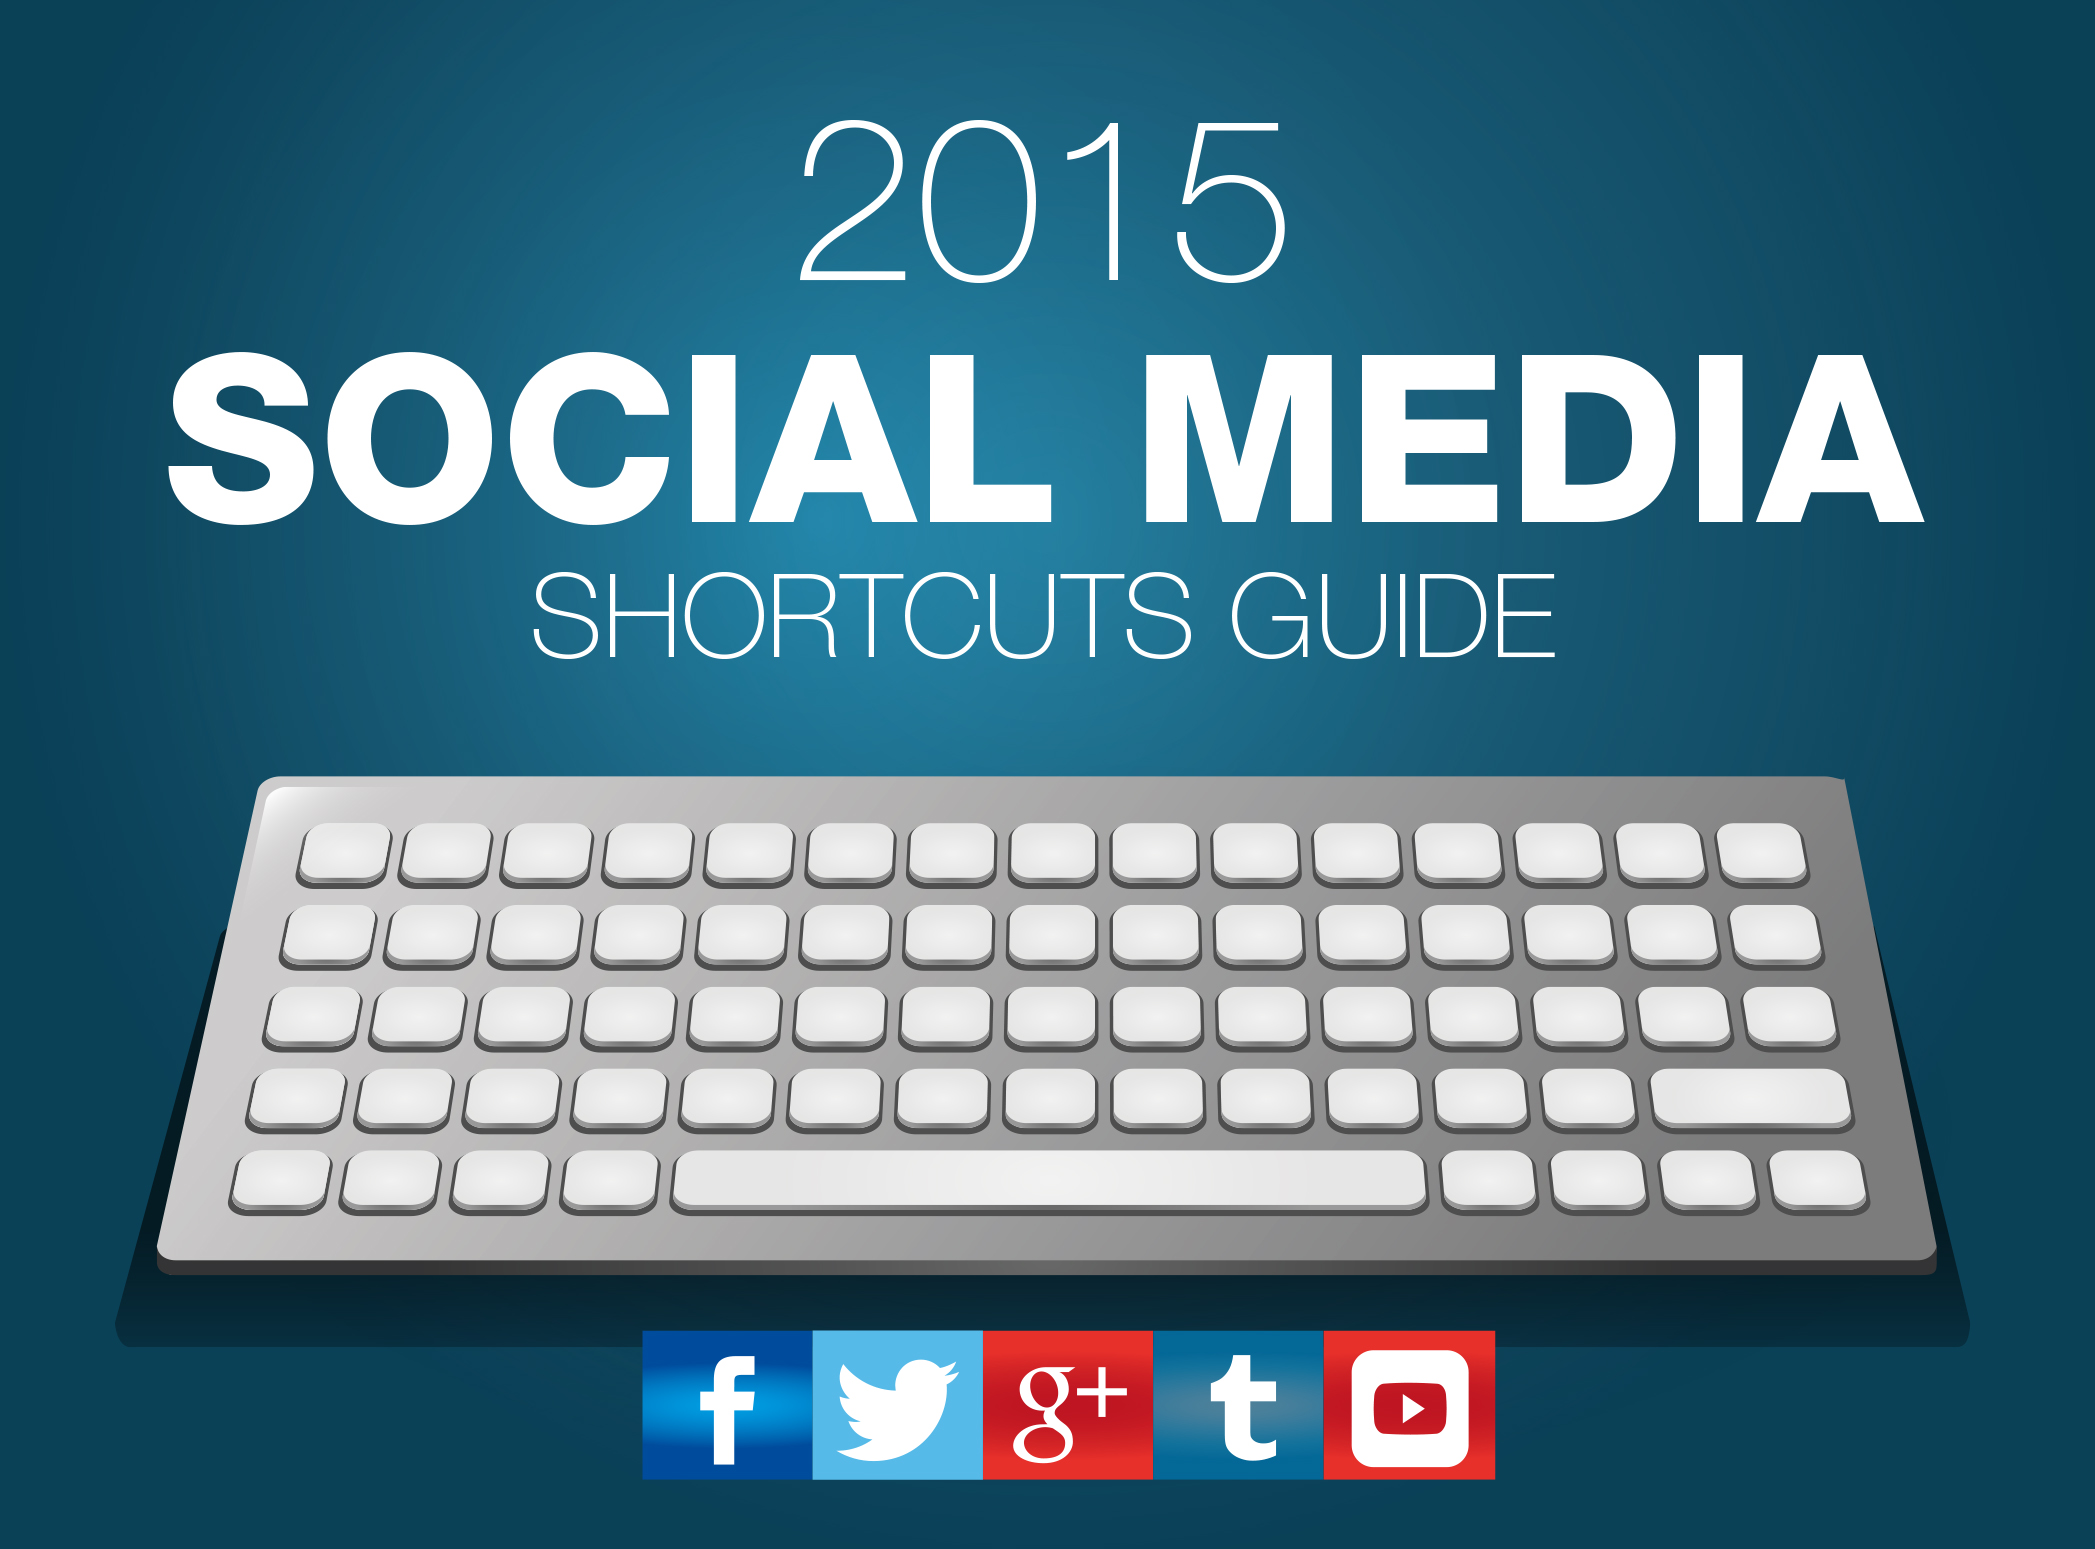 Social media shortcuts you should know